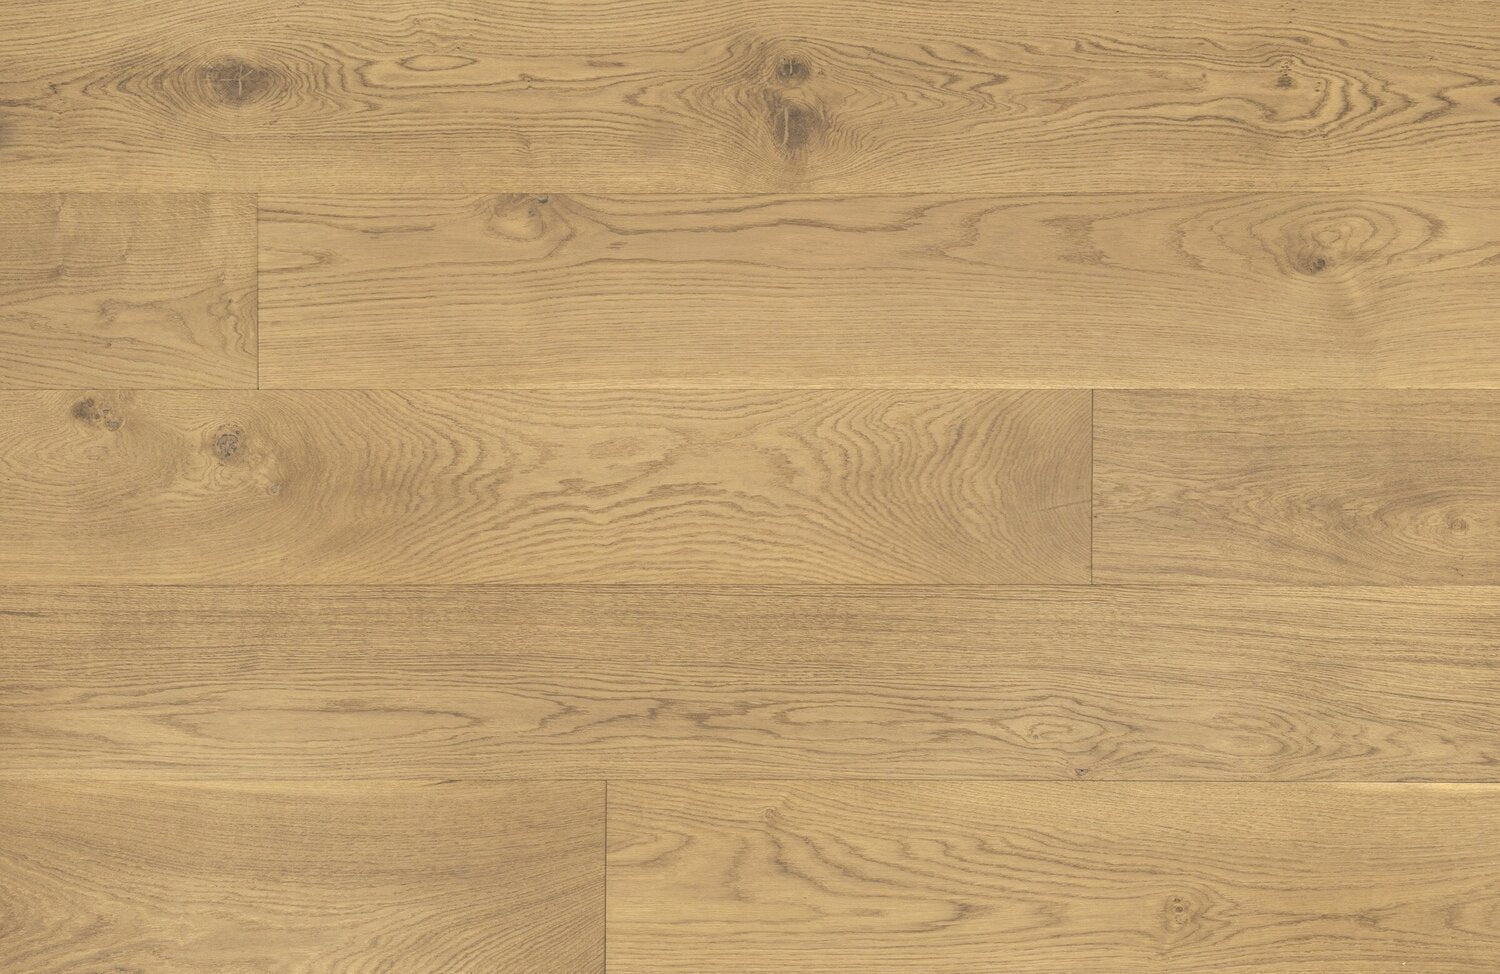 surface group artisan en bois brittany bay street white oak engineered hardwood flooring plank straight.jpg